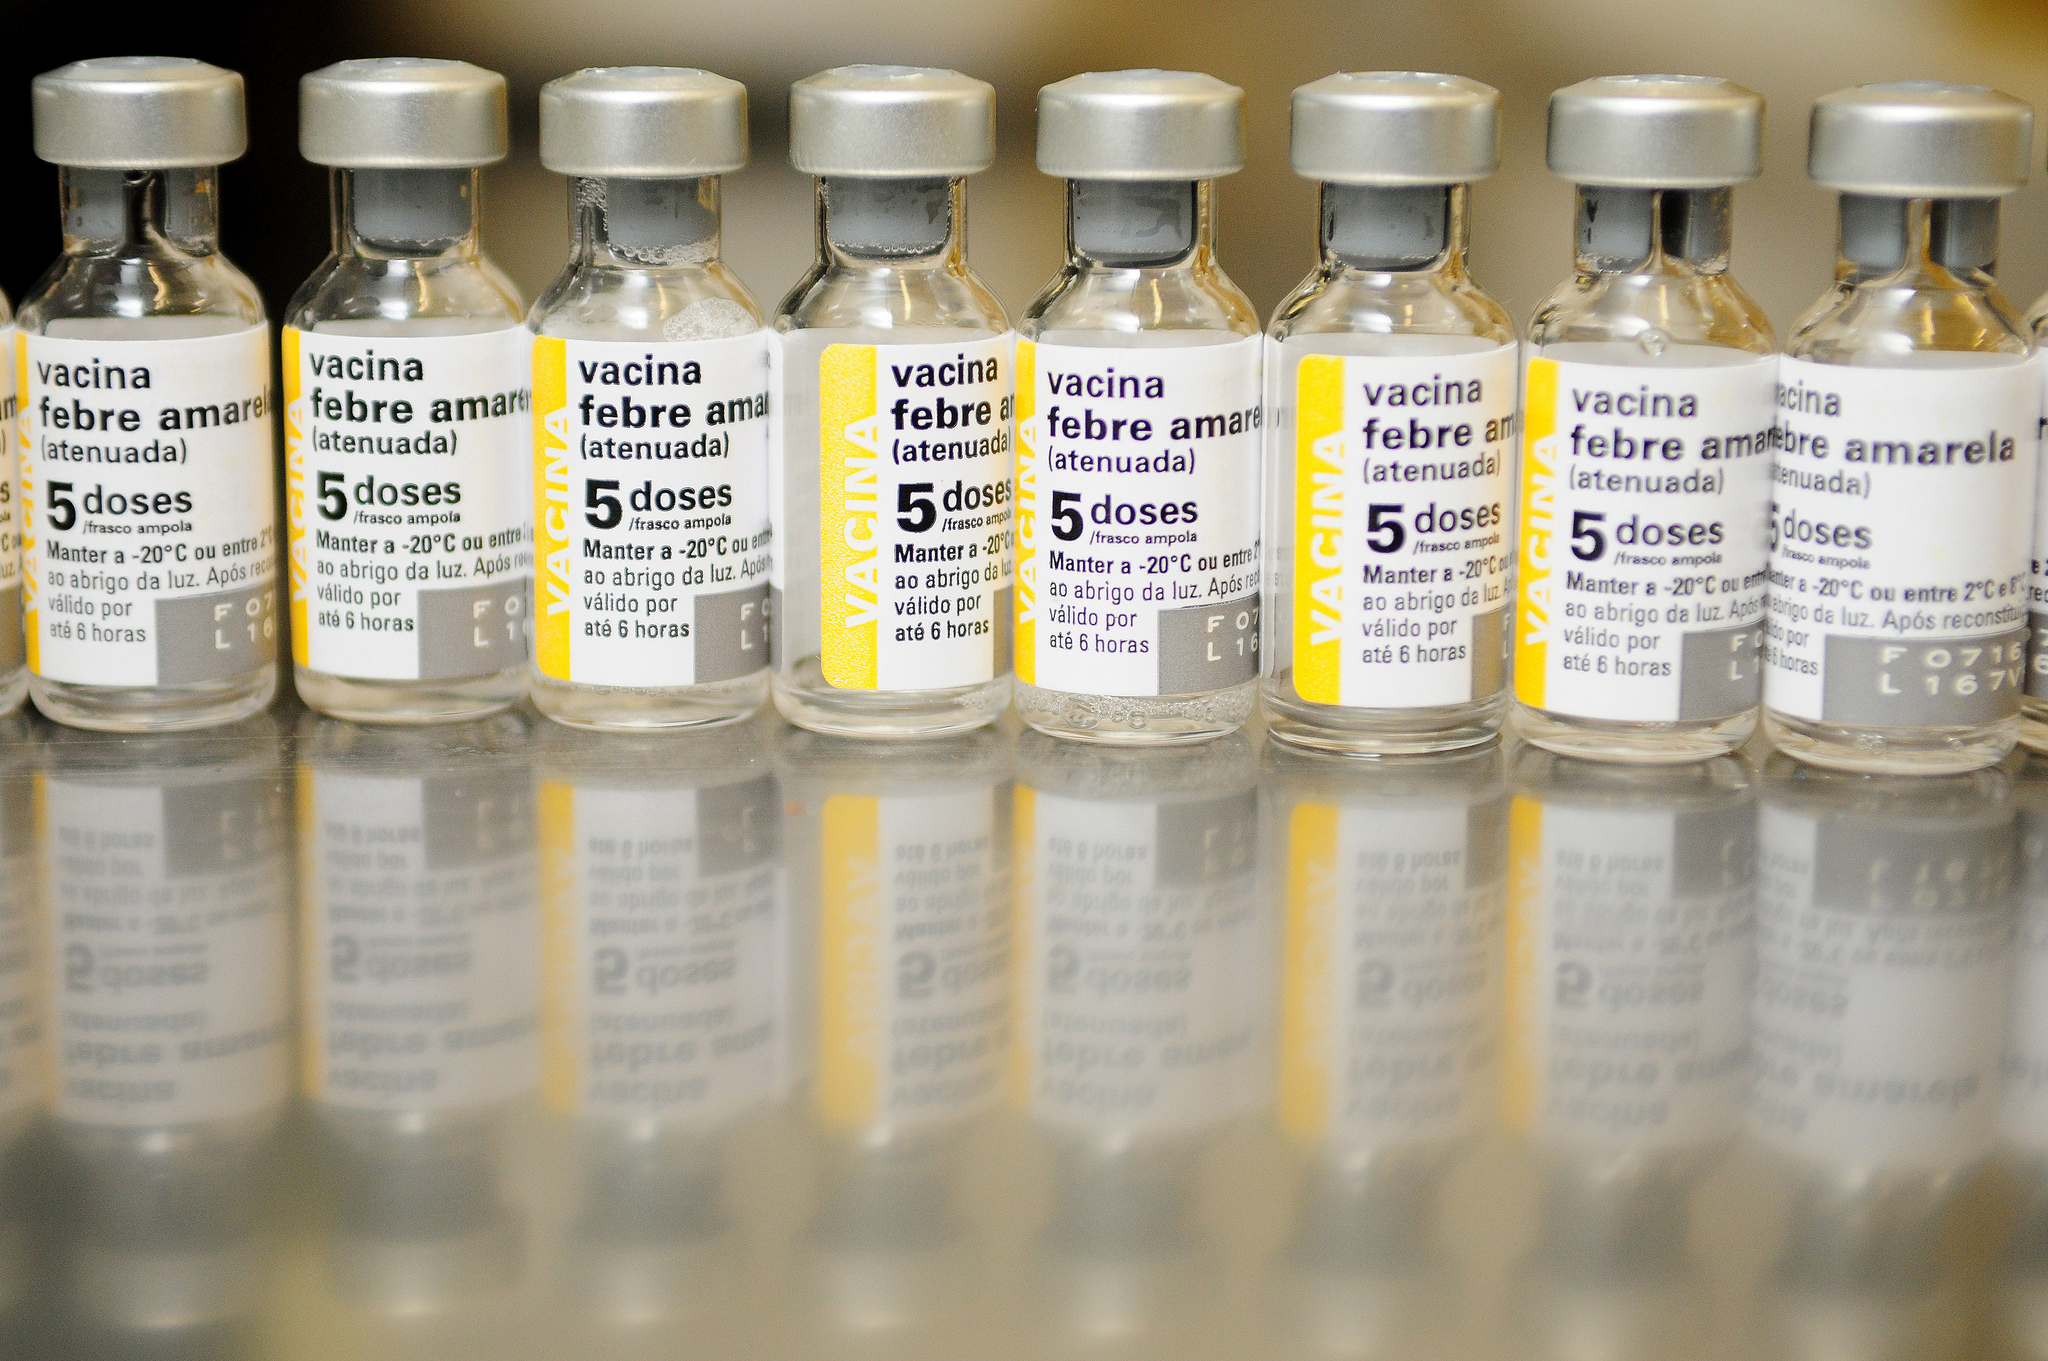 vacina febre amarela fracionada.jpg